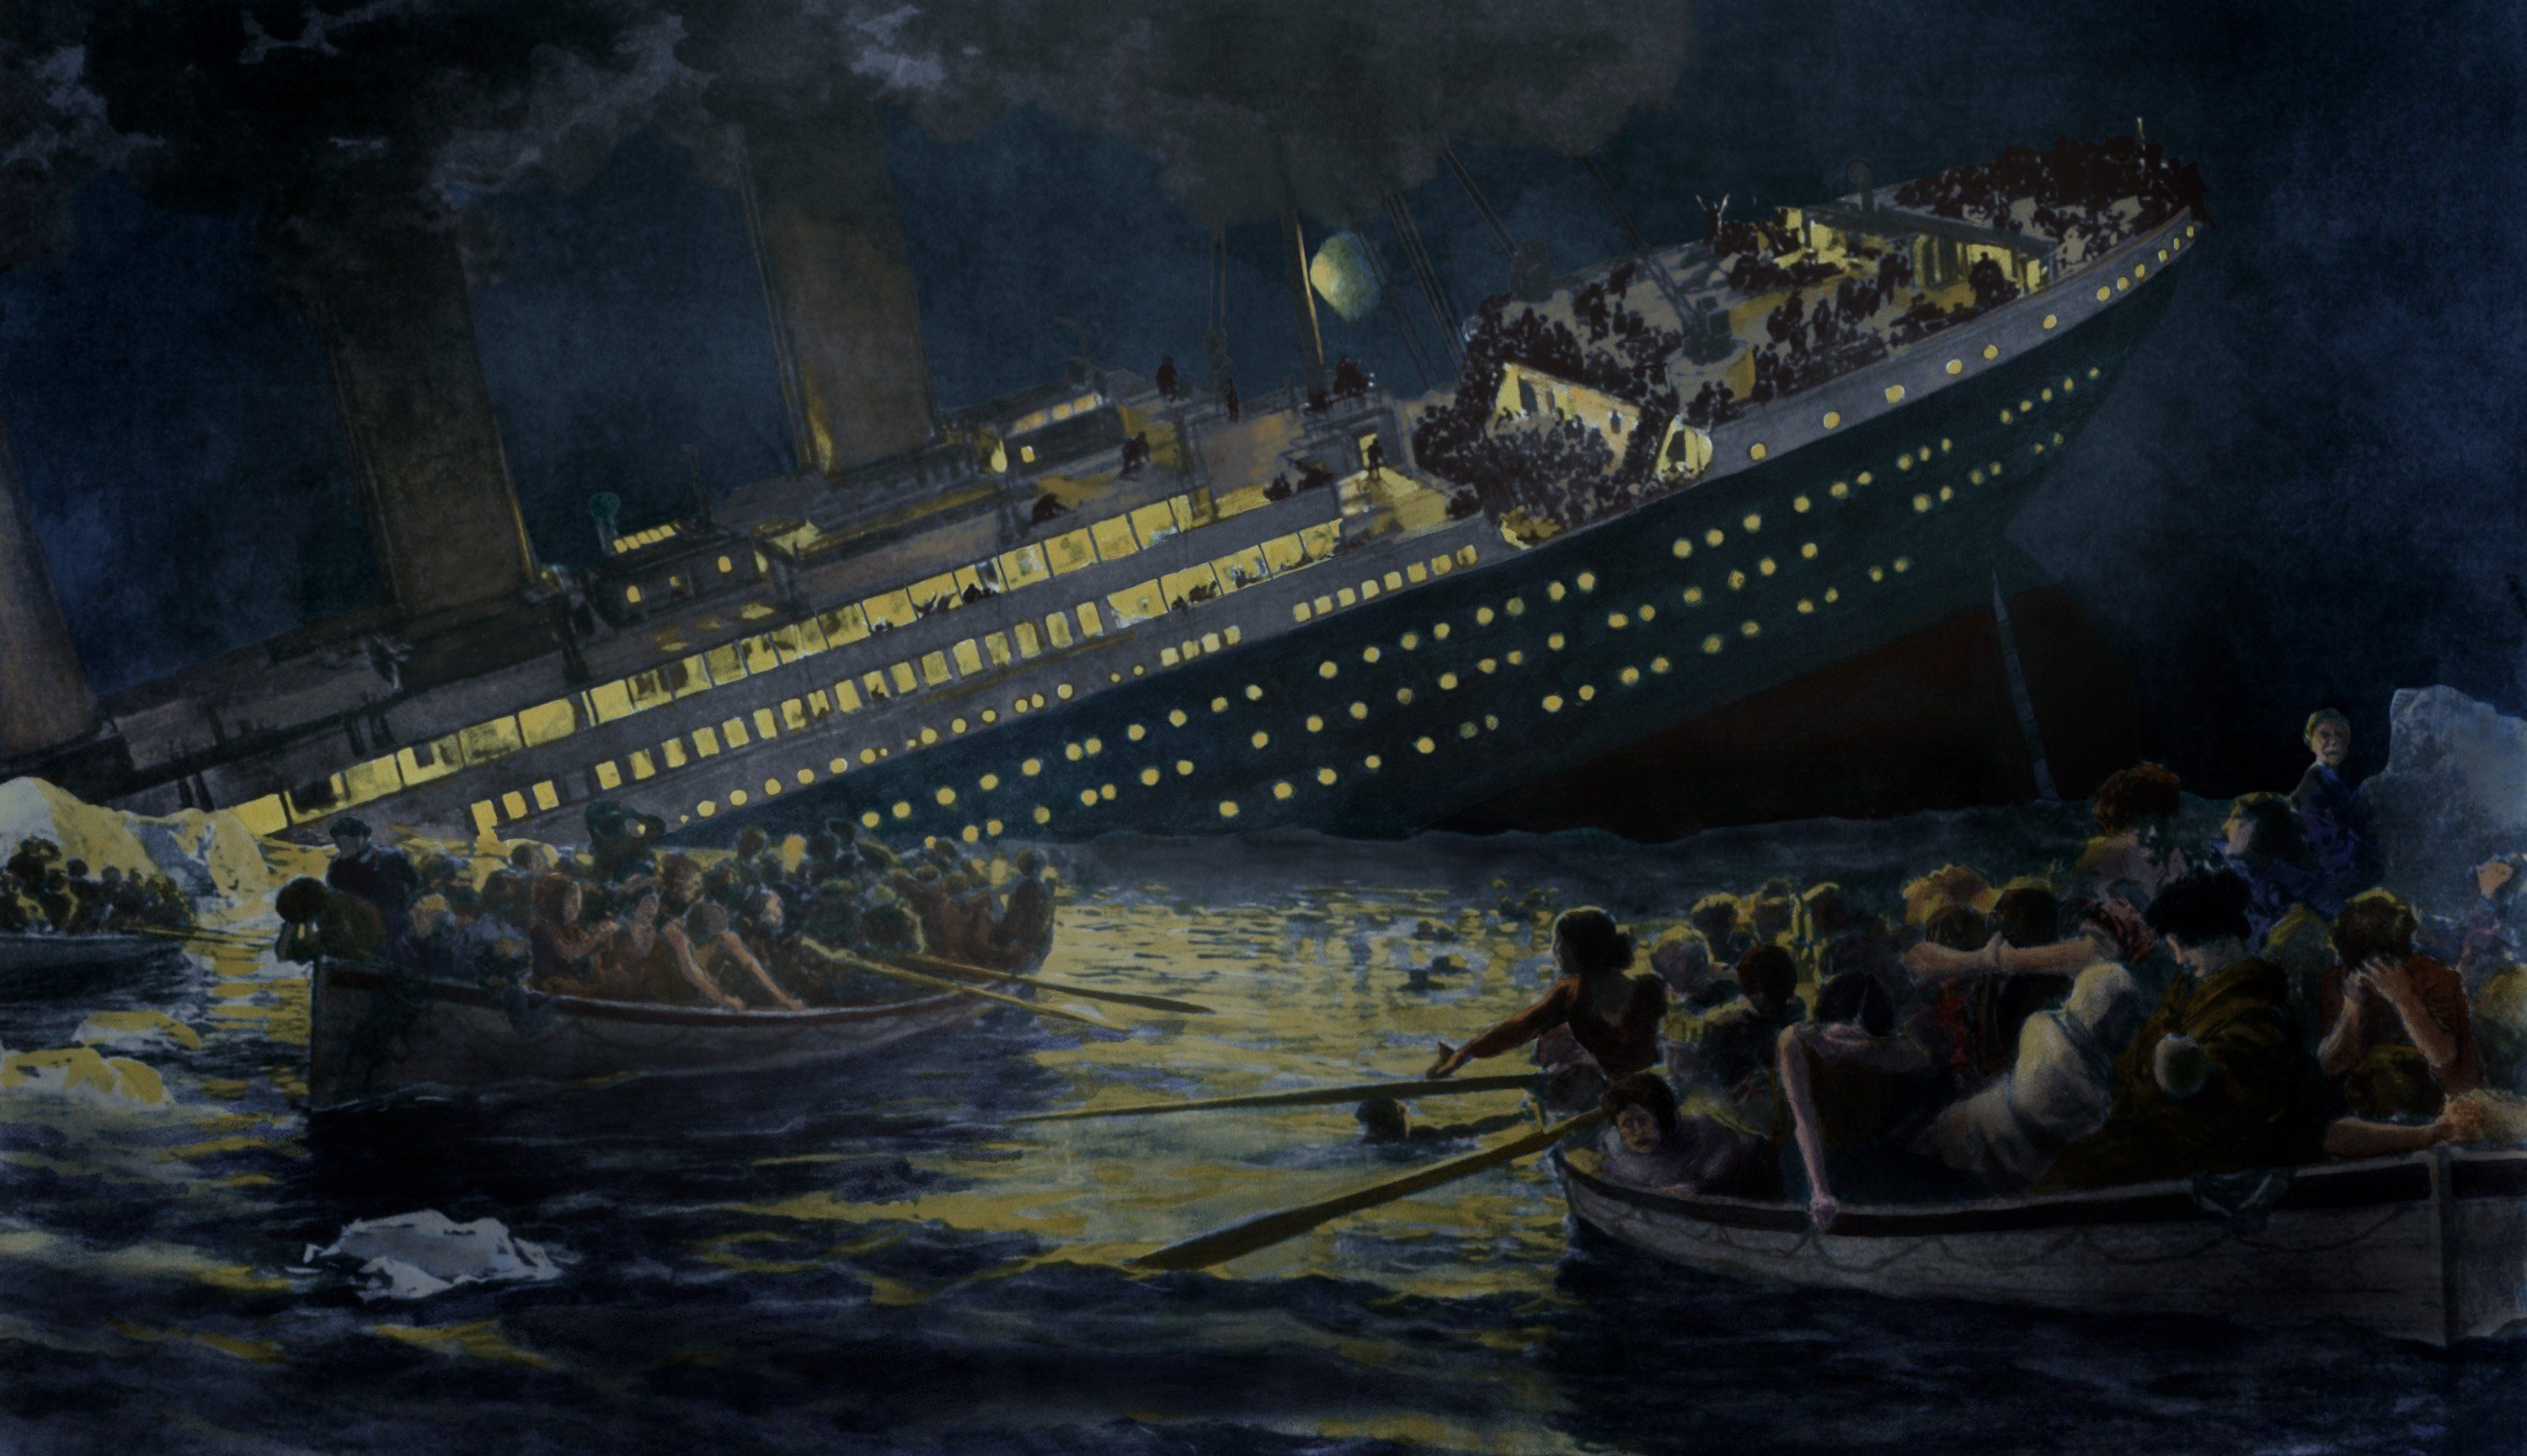 Elkelt a Titanic utolsó vacsorájának menüsora